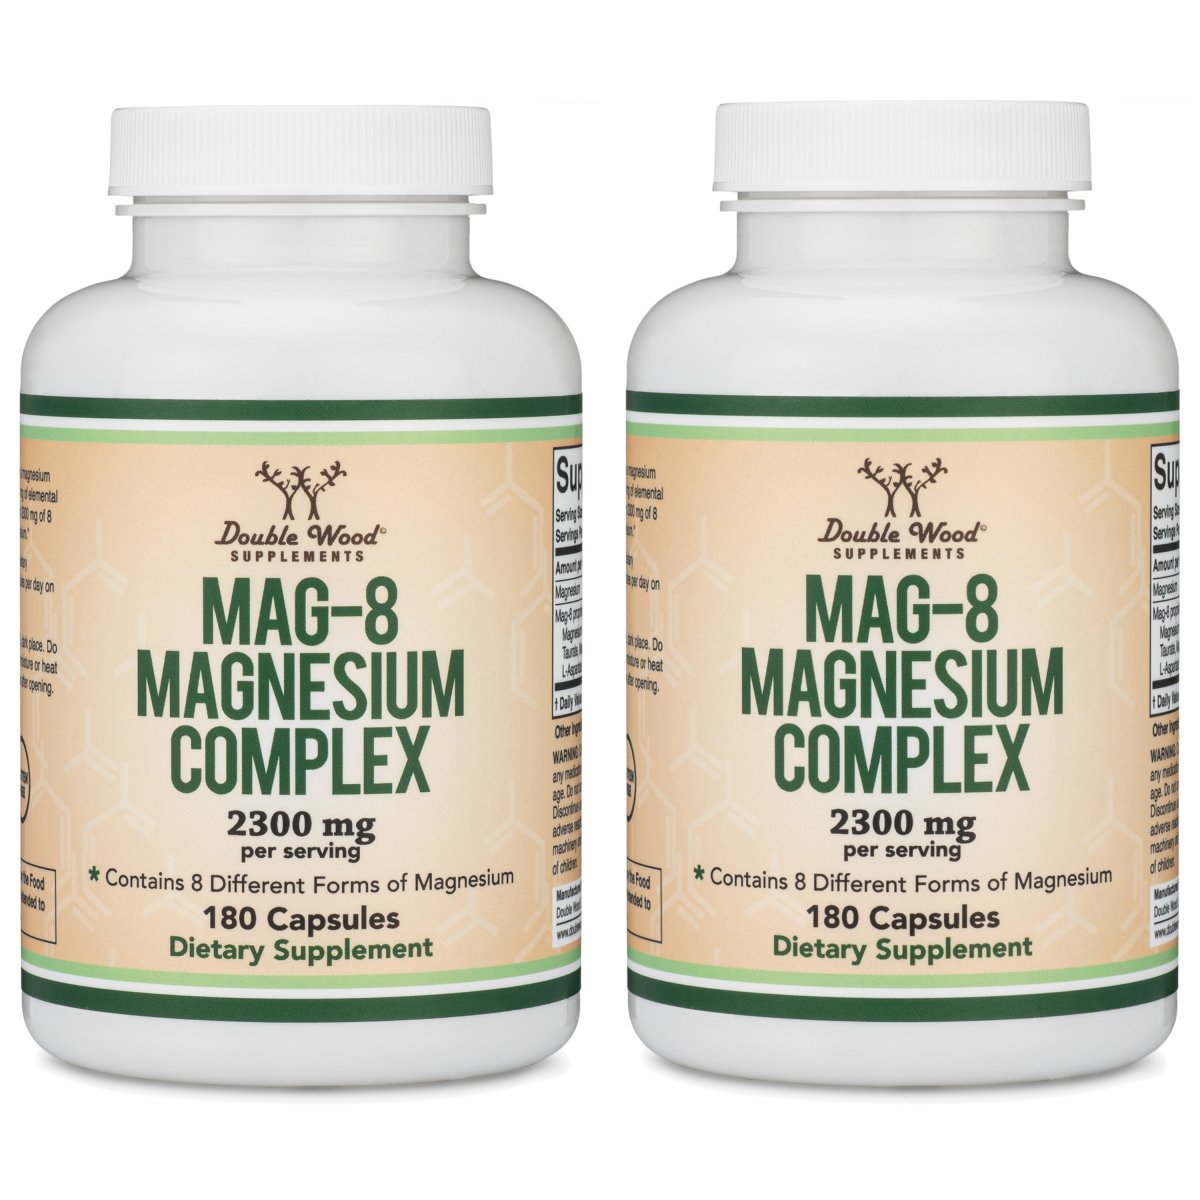 Magnesium Complex (MAG-8)